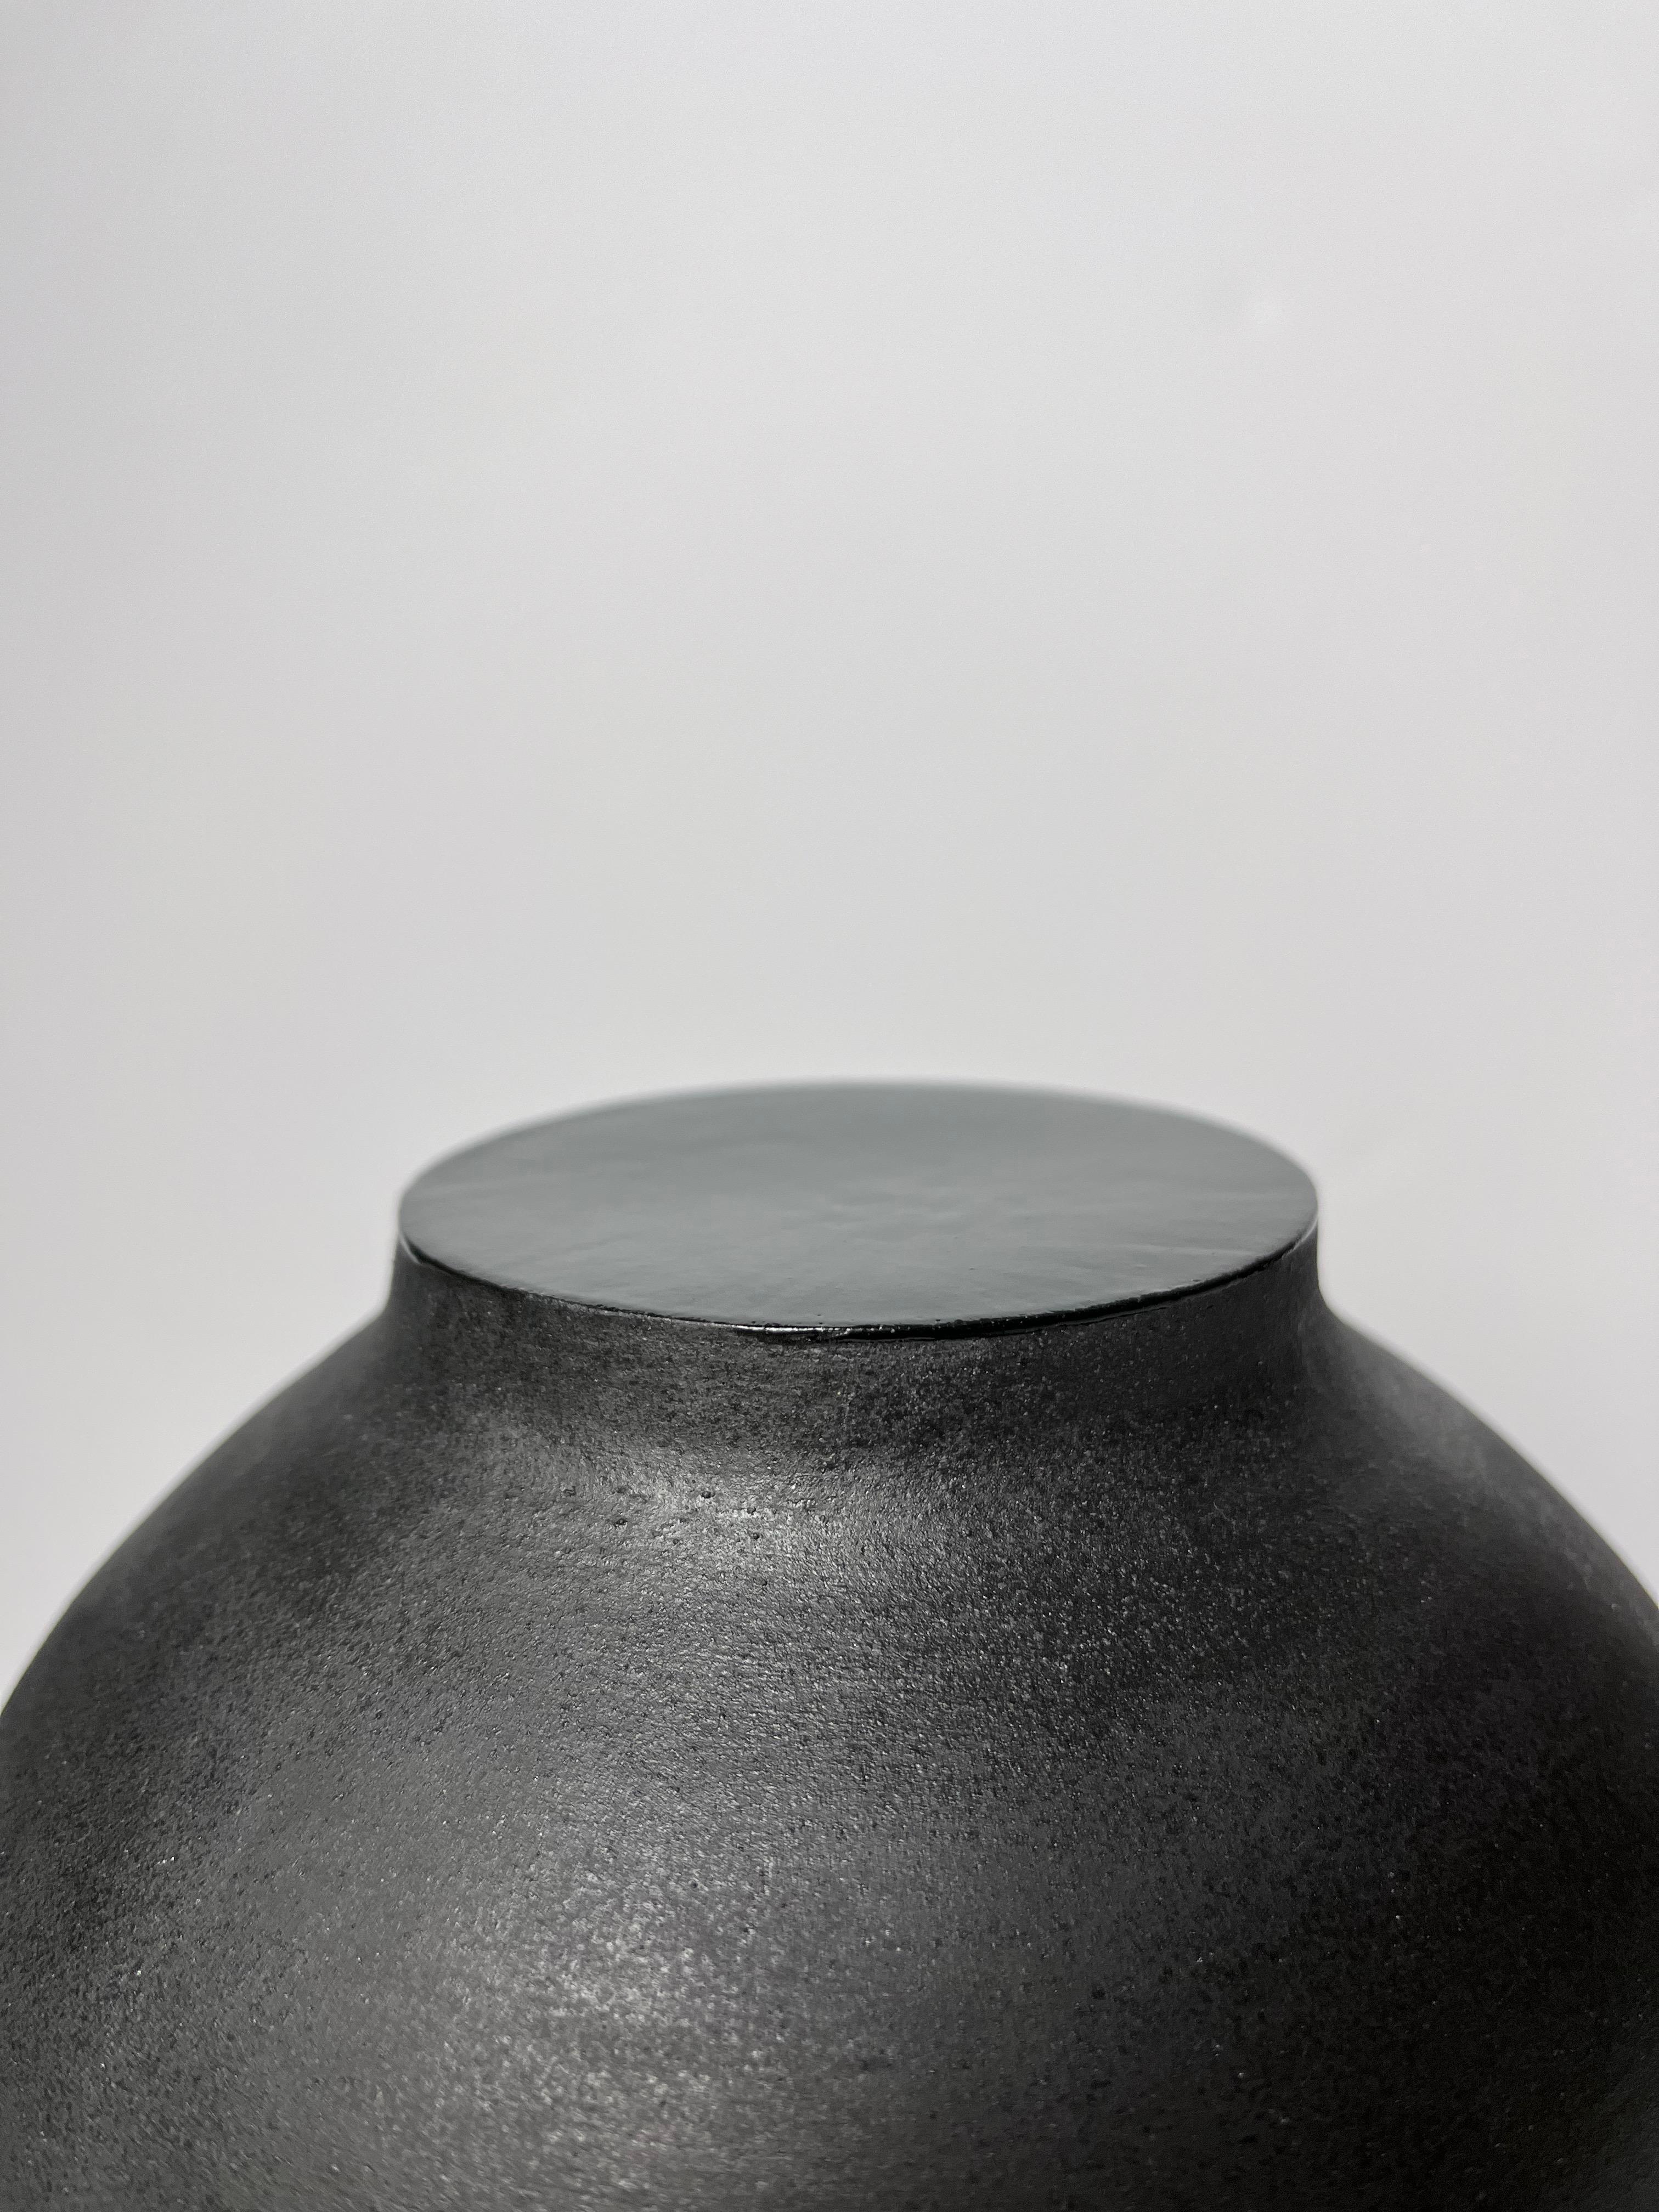 Vase en grès noir avec ouverture centrale et intérieur en grès gris ciment. La partie supérieure du col est fermée par un émail noir.
Entièrement fait à la main.